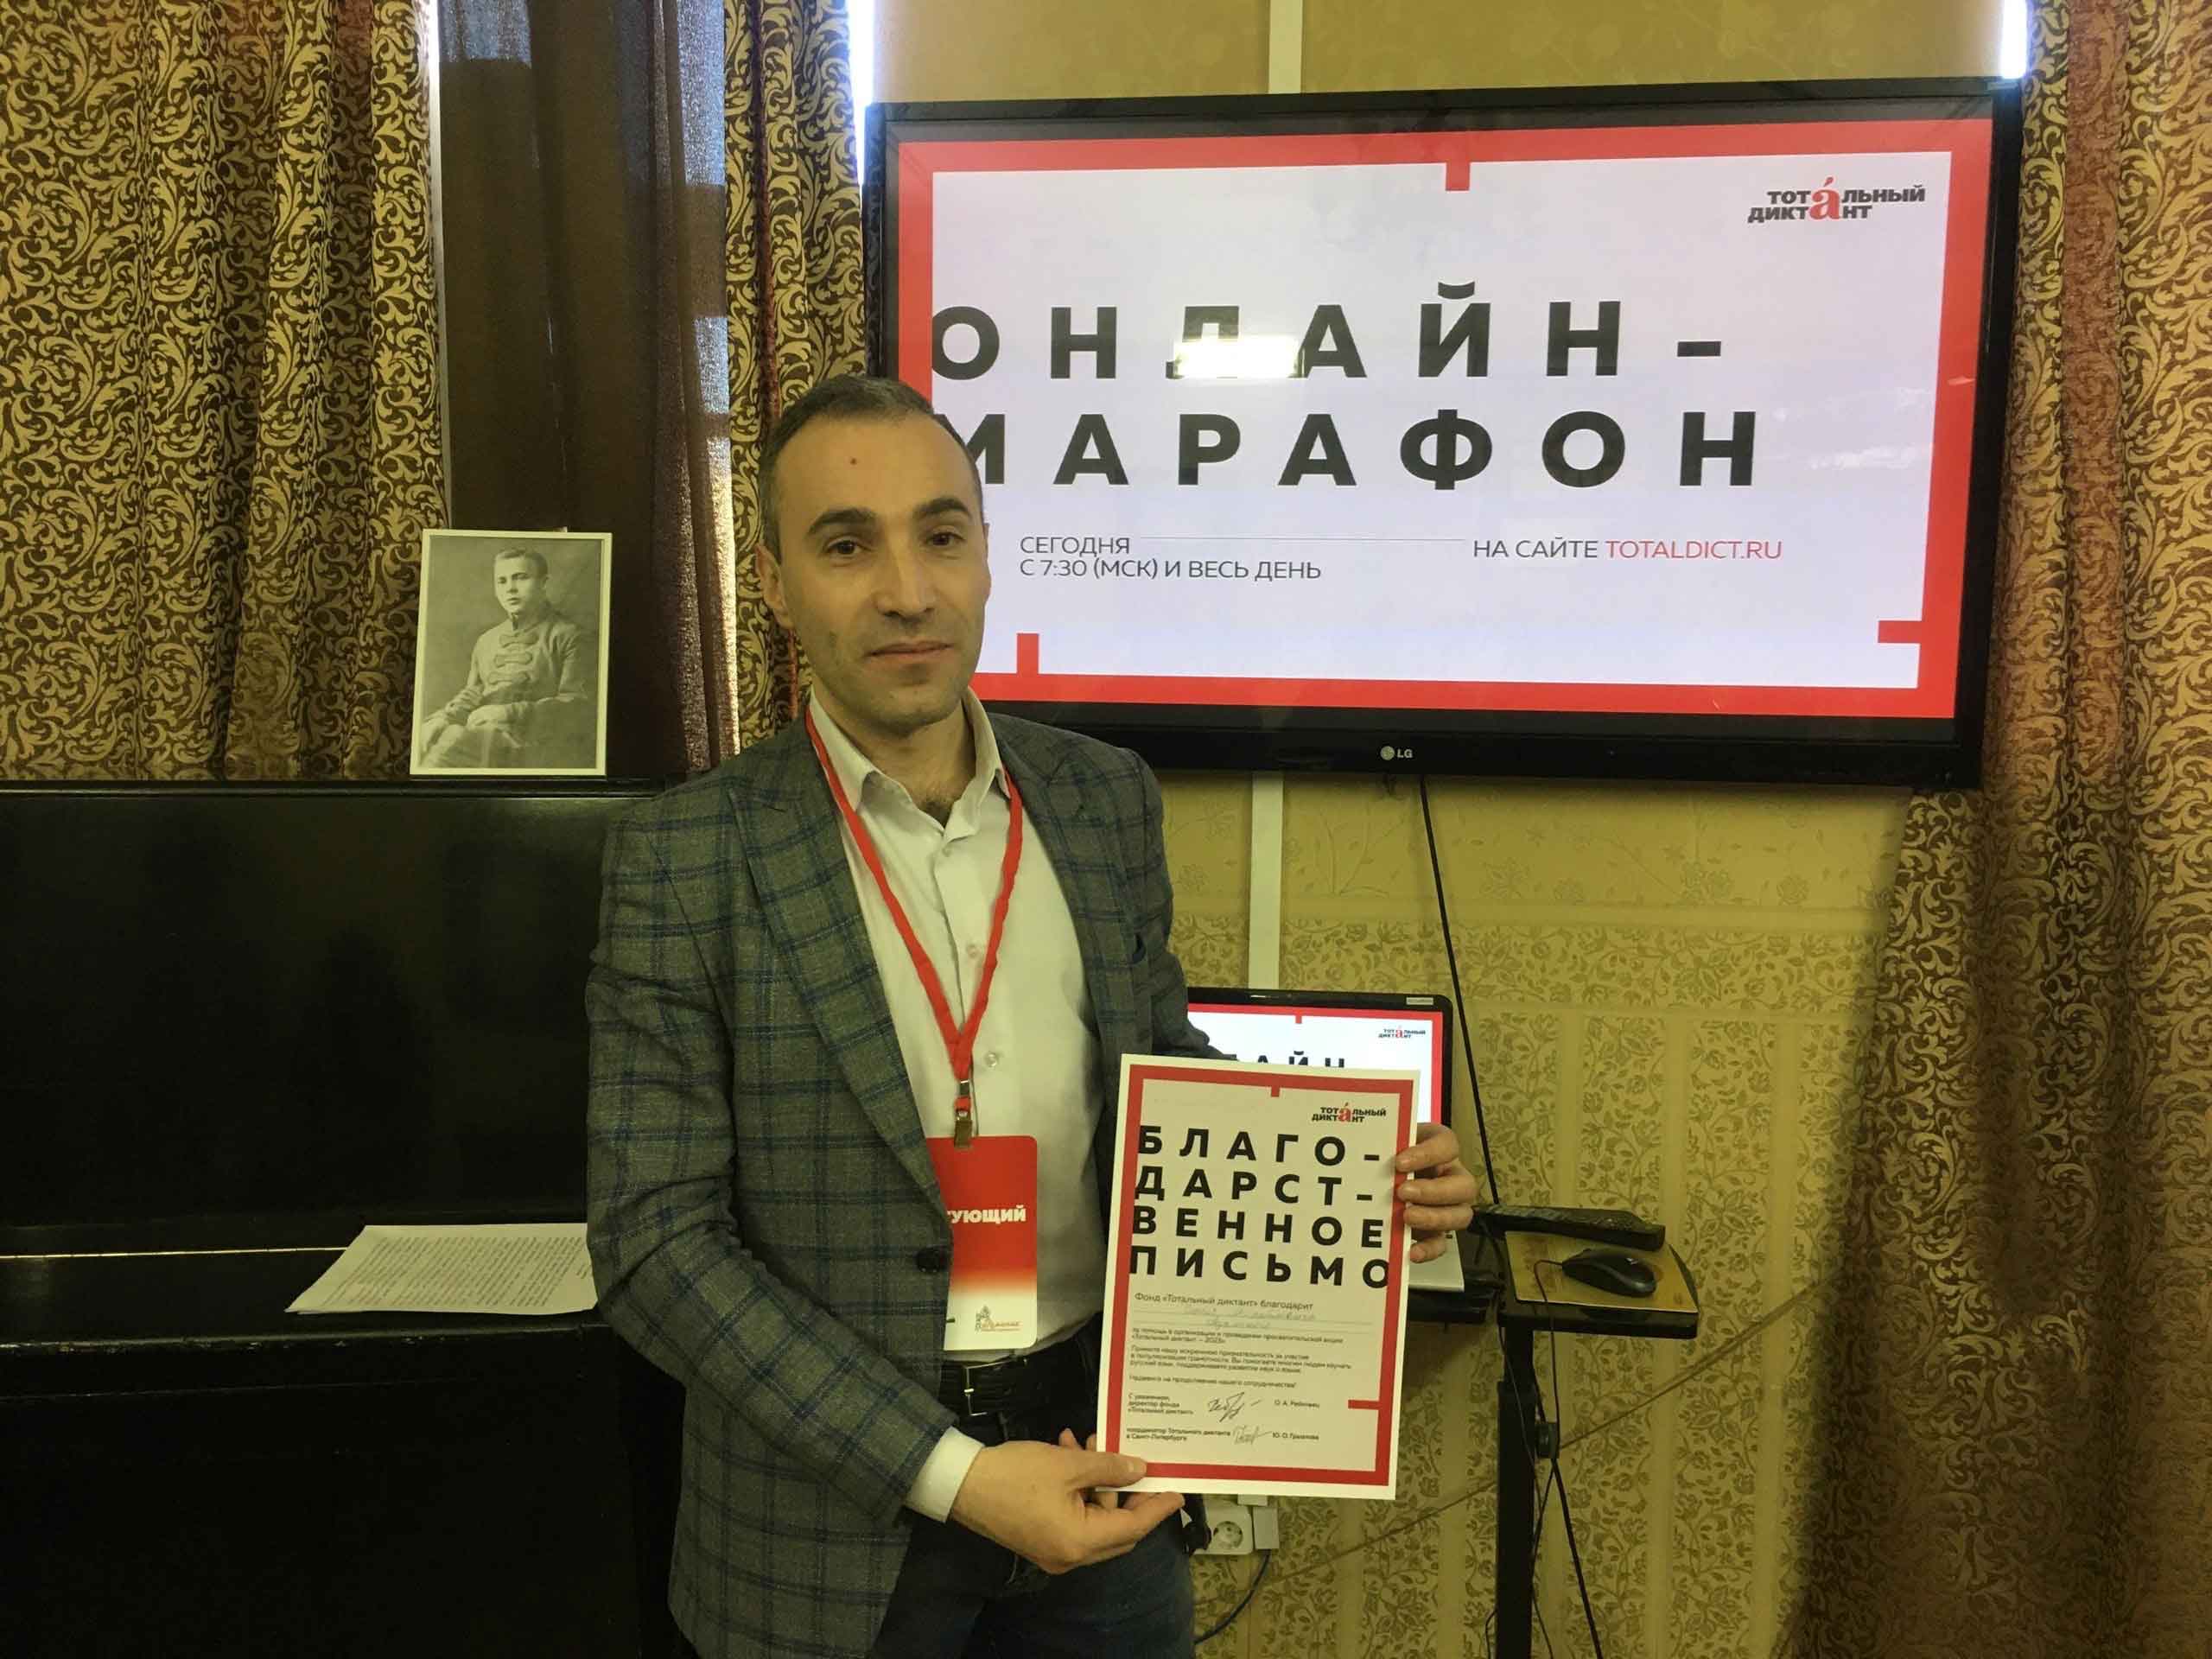 8 апреля просветительская акция «Тотальный диктант -2023» объединила 150 участников, желающих проверить свой уровень грамотности, в стенах семи Библиотек Петроградской стороны